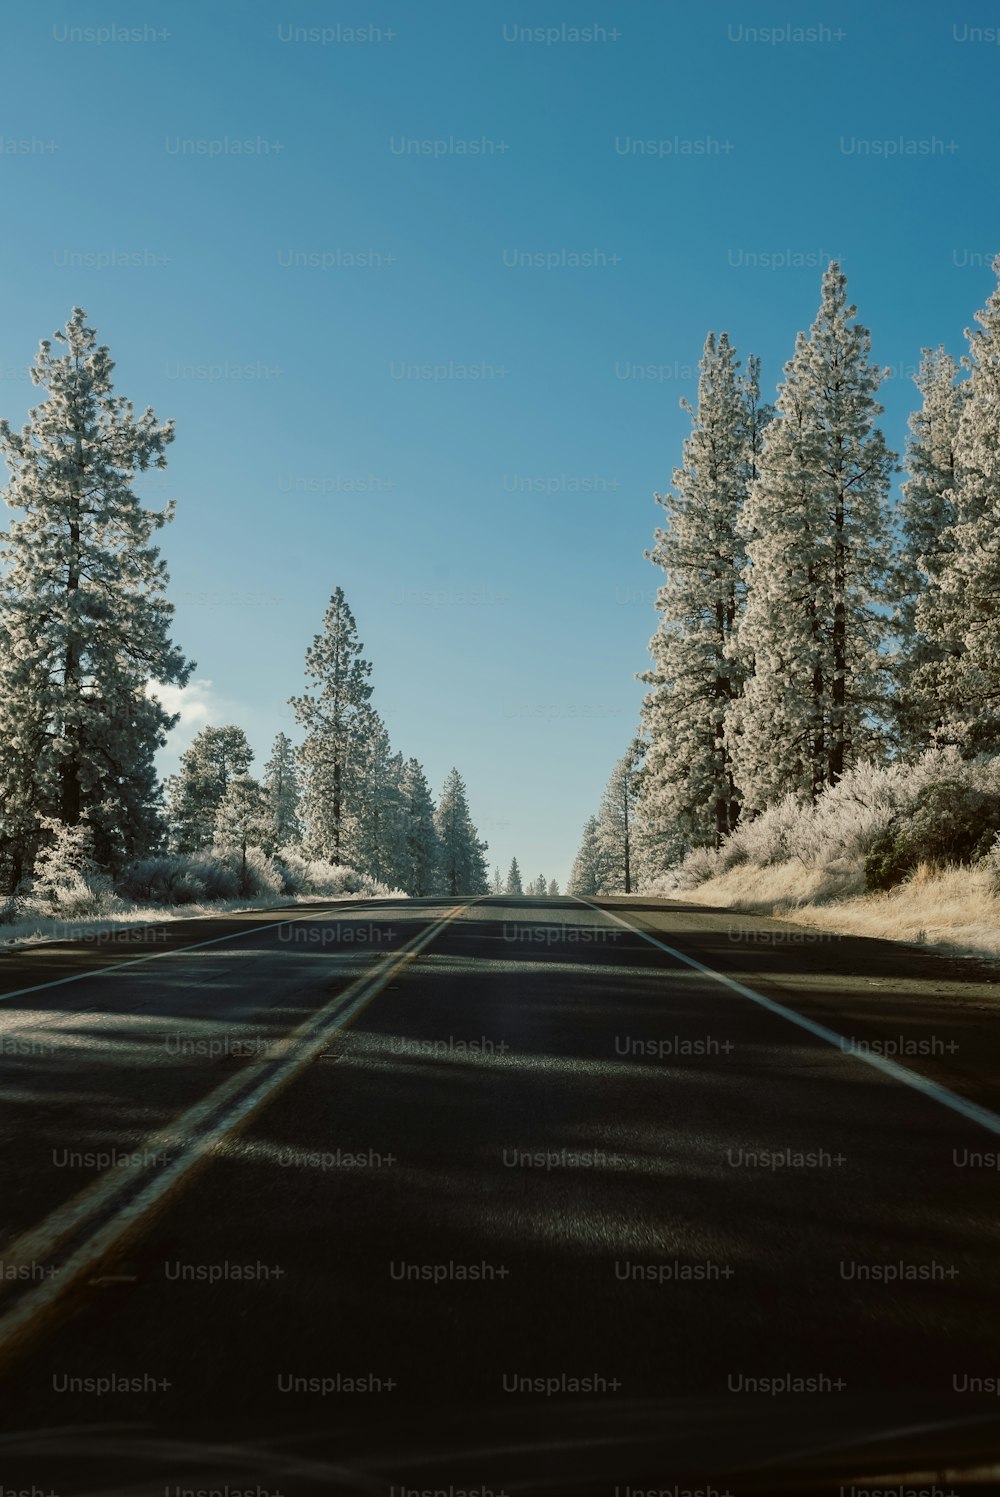 Une route avec des arbres des deux côtés et de la neige au sol